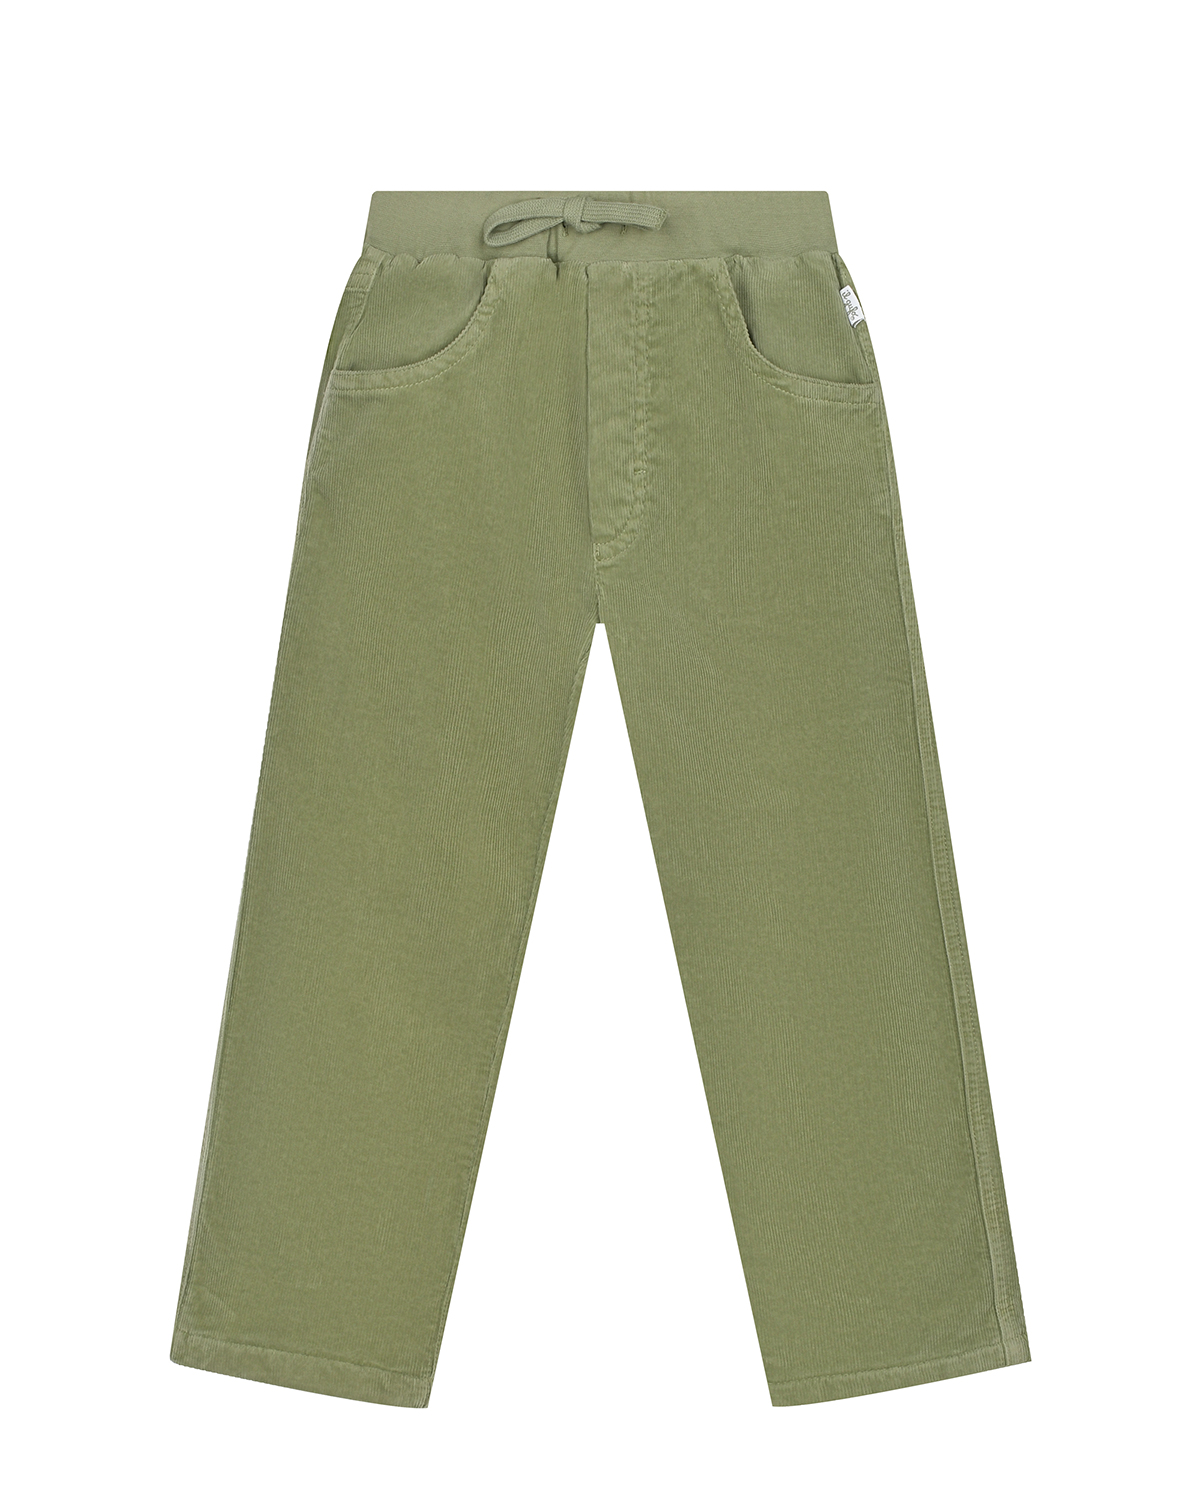 Велюровые брюки зеленого цвета IL Gufo детские, размер 98